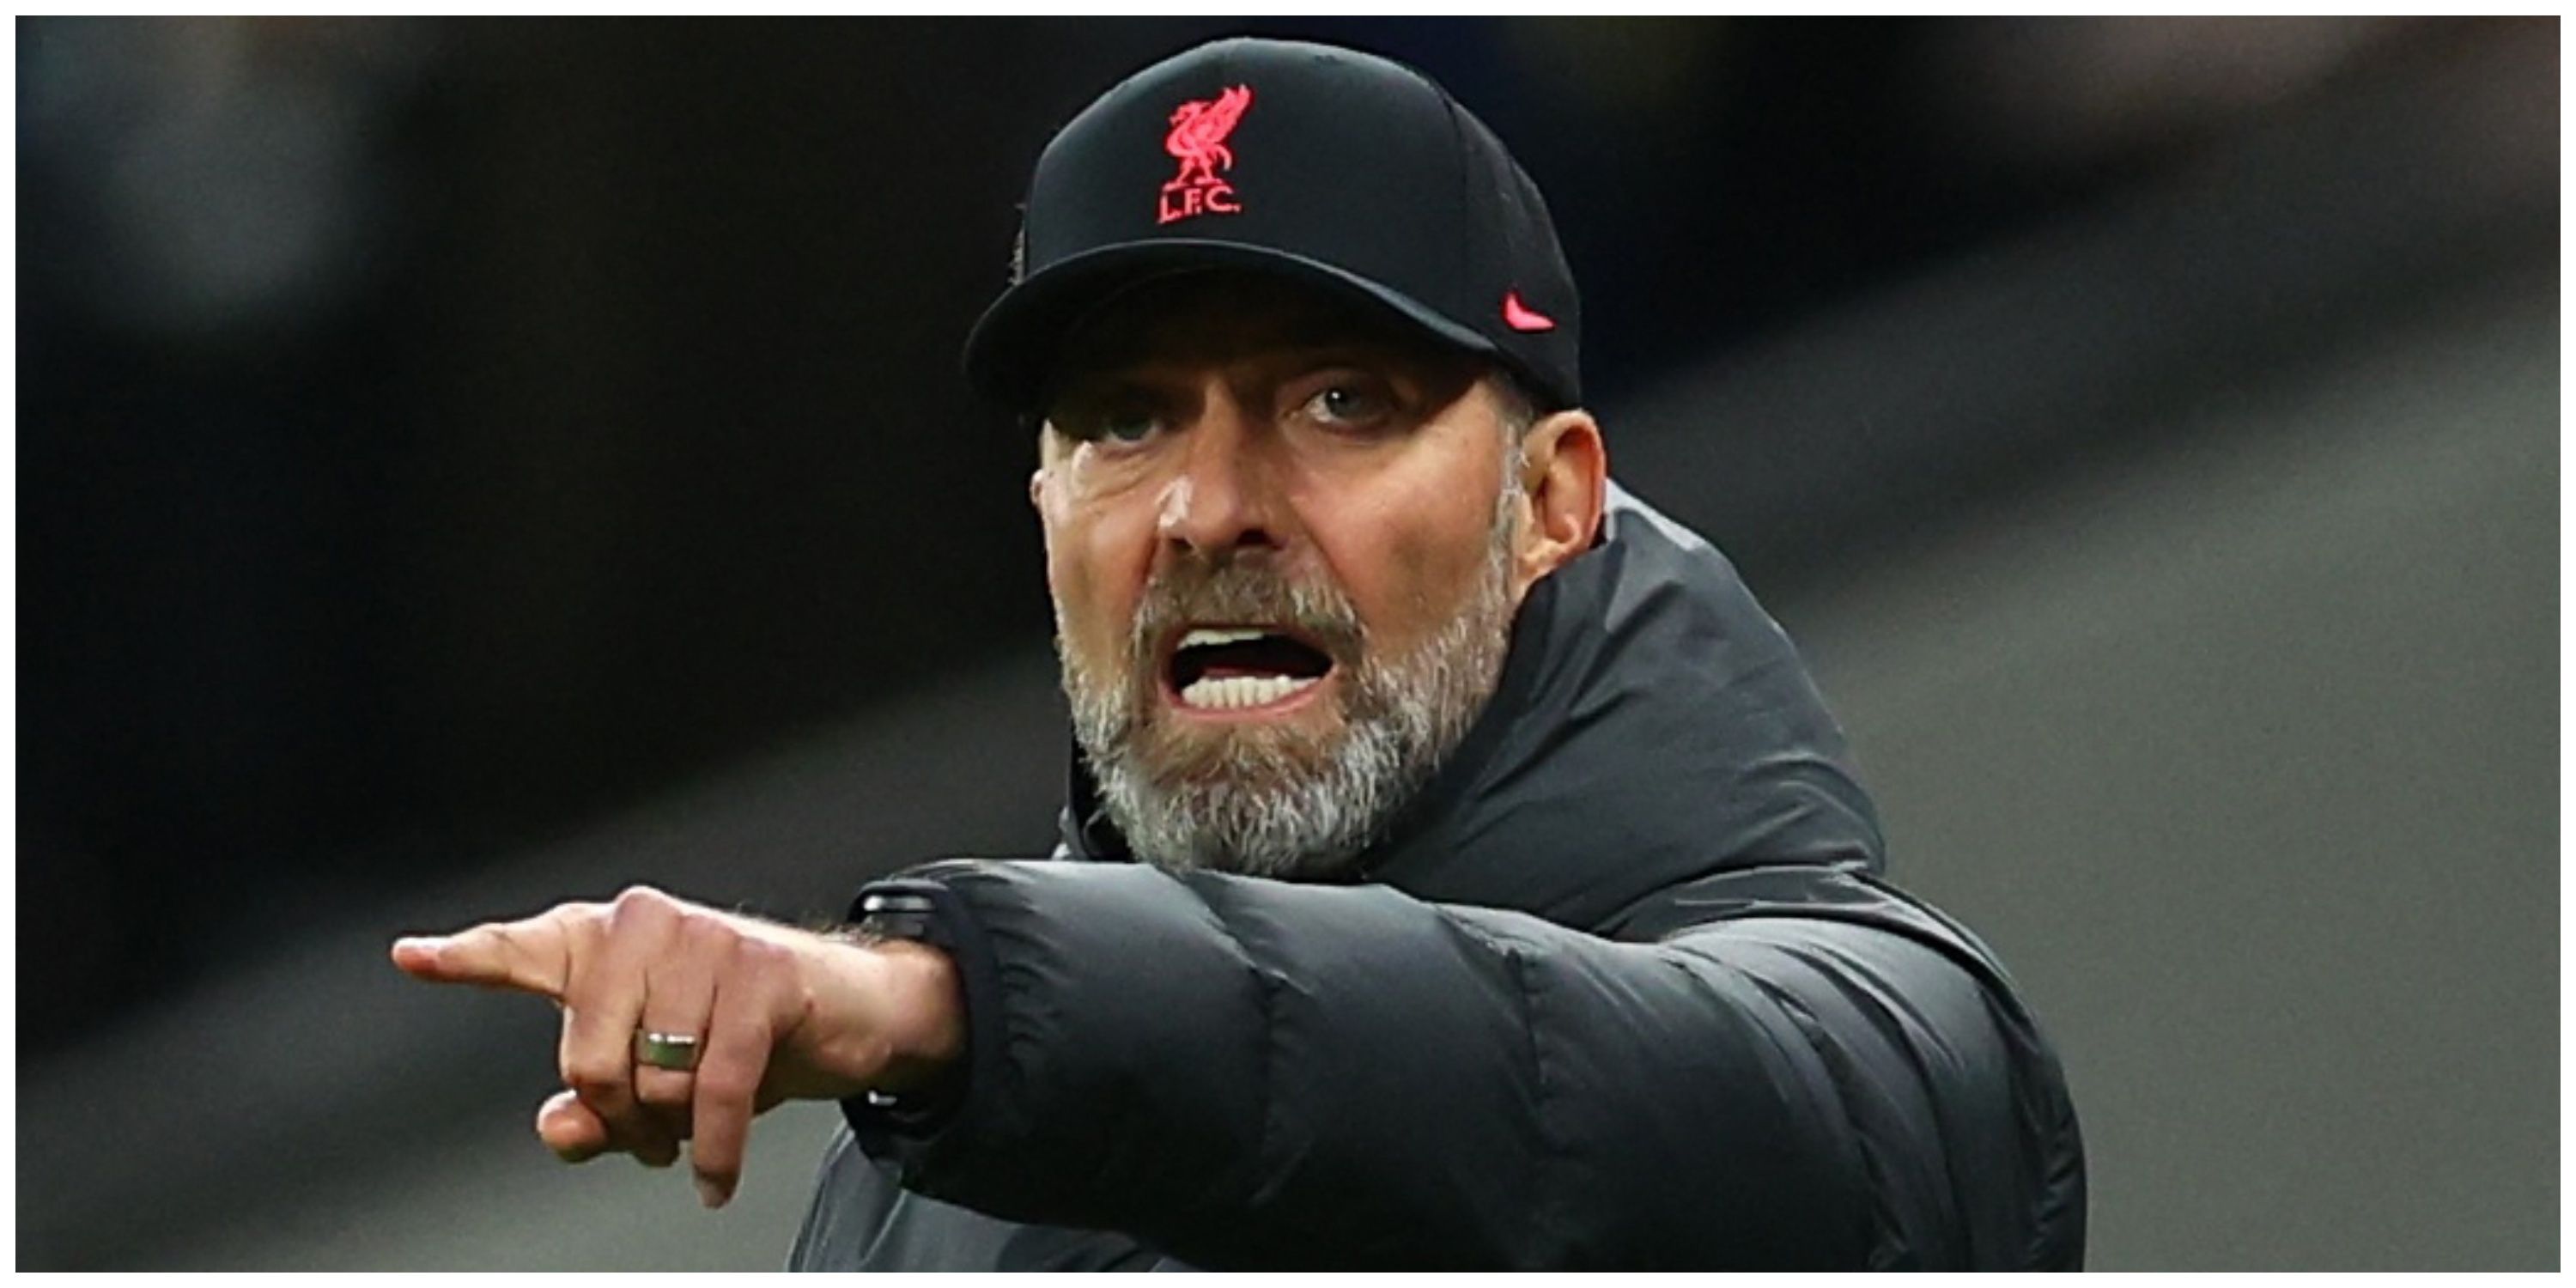 Liverpool manager Jurgen Klopp pointing